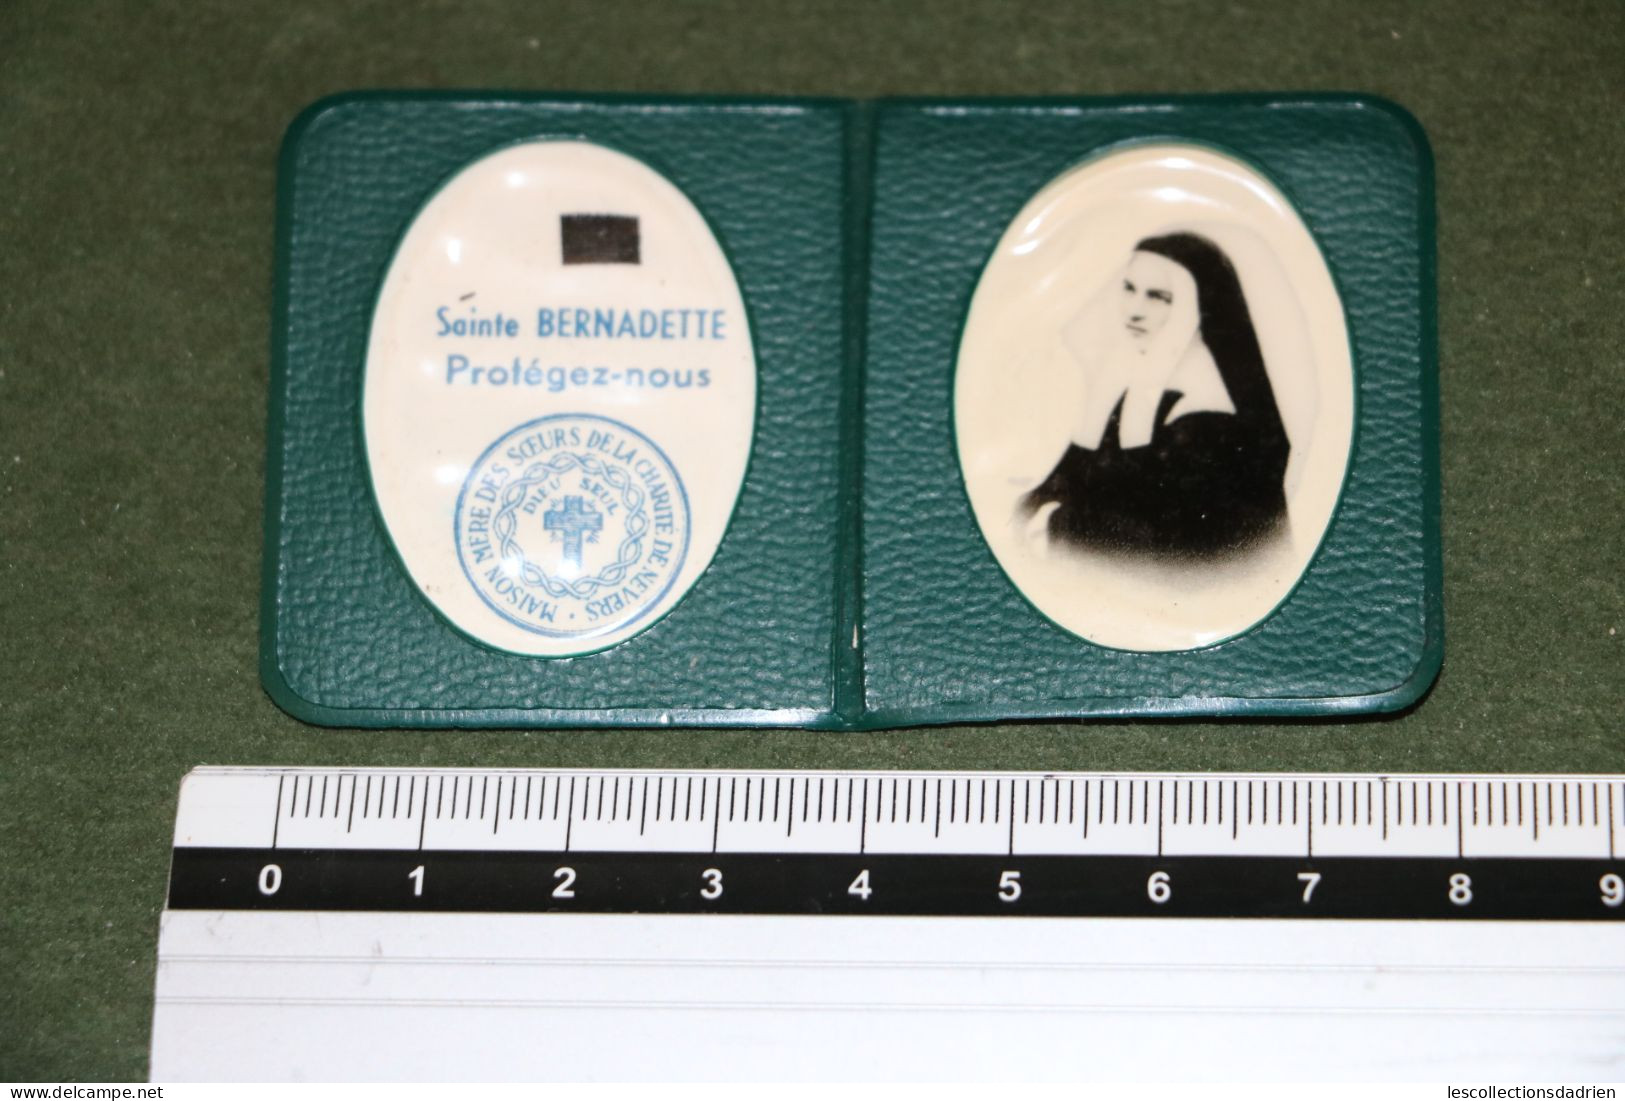 Pochette Avec Relique Sainte Bernadette - Relics - Religion & Esotérisme